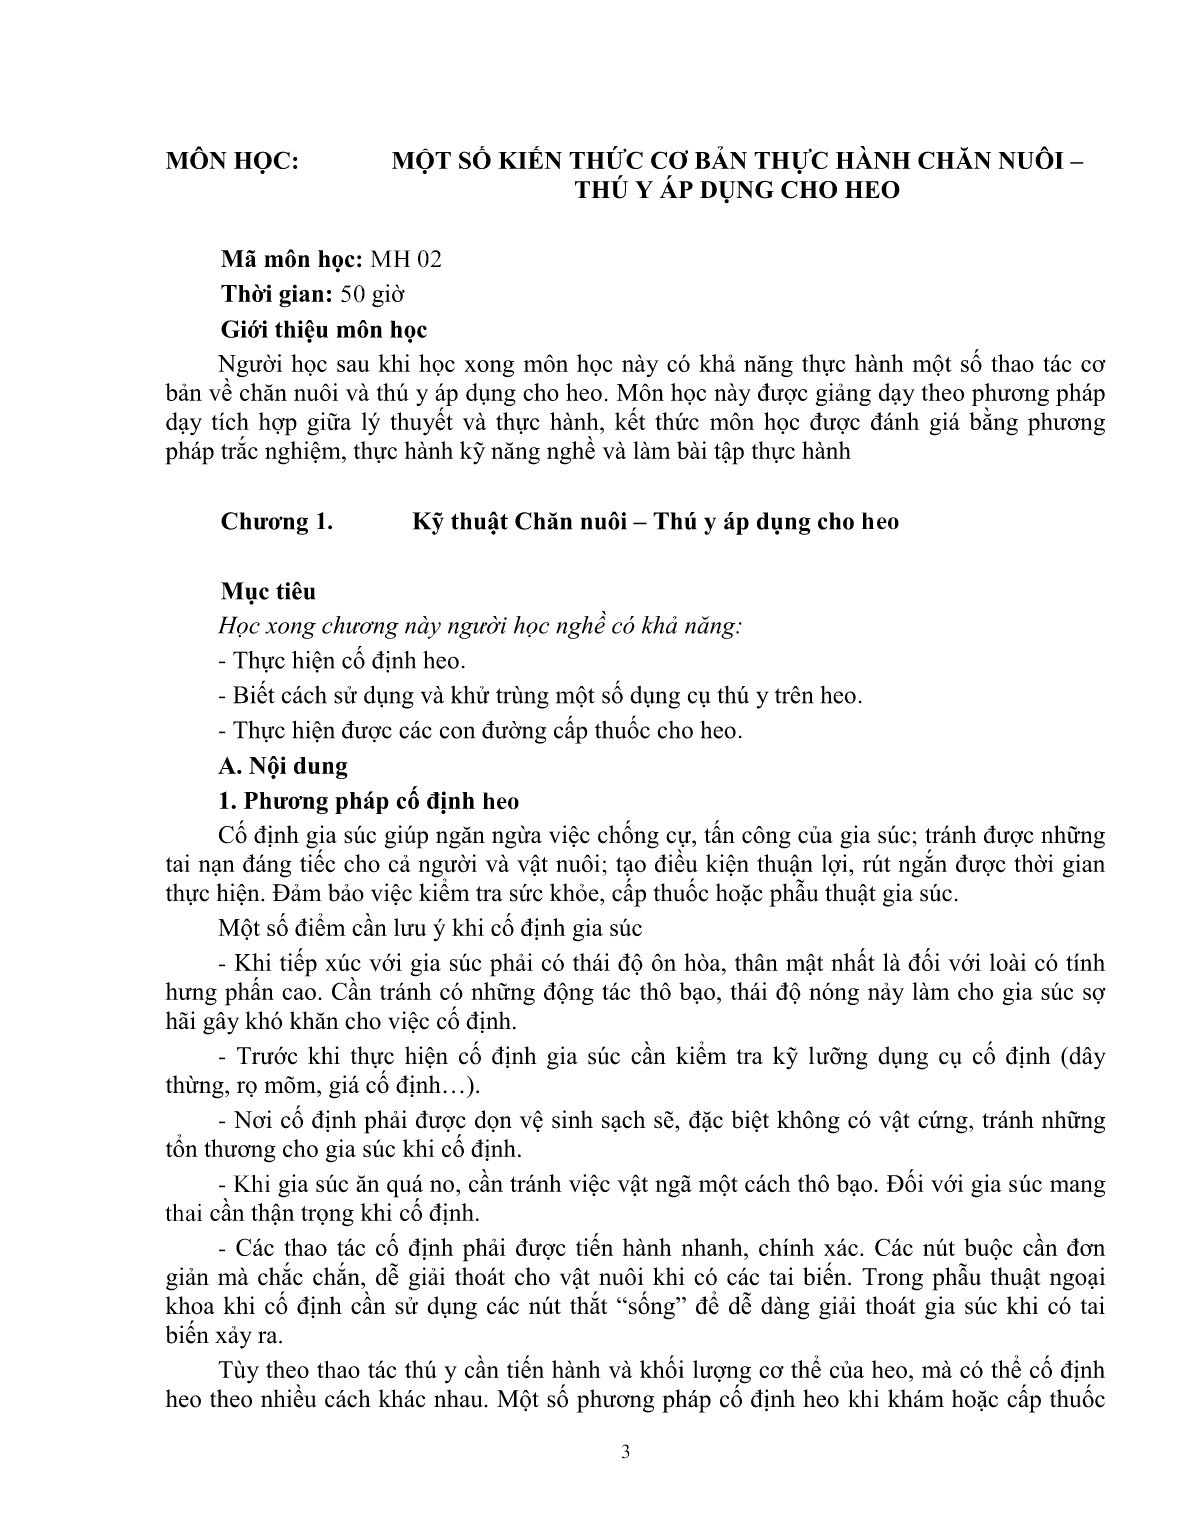 Giáo trình Một số kiến thức cơ bản thực hành chăn nuôi – thú y áp dụng cho heo (Trình độ: Đào tạo dưới 3 tháng) trang 4